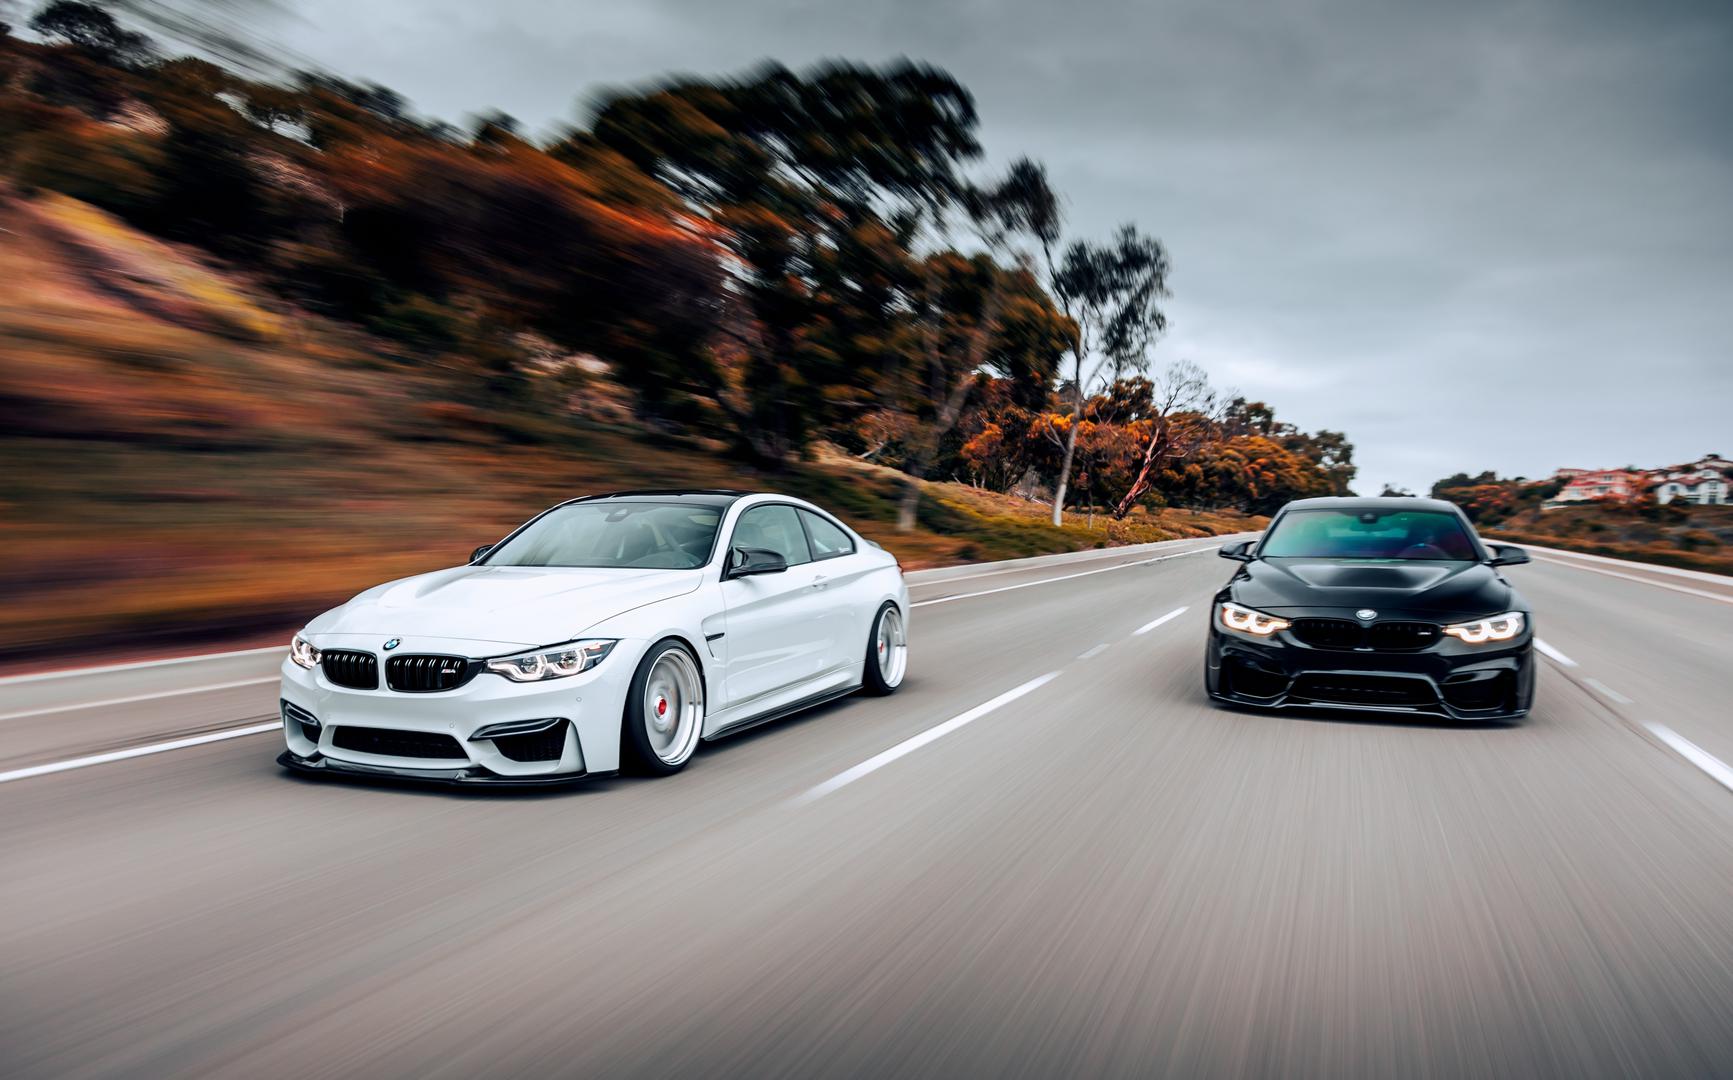 BMW: Ukupni troškovi održavanja tijekom 10 godina - 9.500 dolara. BMW je jedna od najpoznatijih i najprepoznatljivijih marki automobila na cesti. Međutim, njemačka luksuzna vozila još uvijek mogu nagomilati skupe račune vlasnicima koji ih pokušavaju održavat najbolje što mogu. Vozači izvještavaju da su troškovi održavanja u prosjeku iznosili 1700 dolara tijekom prve polovice desetljeća života njihovih BMW-a i 7800 dolara tijekom druge.